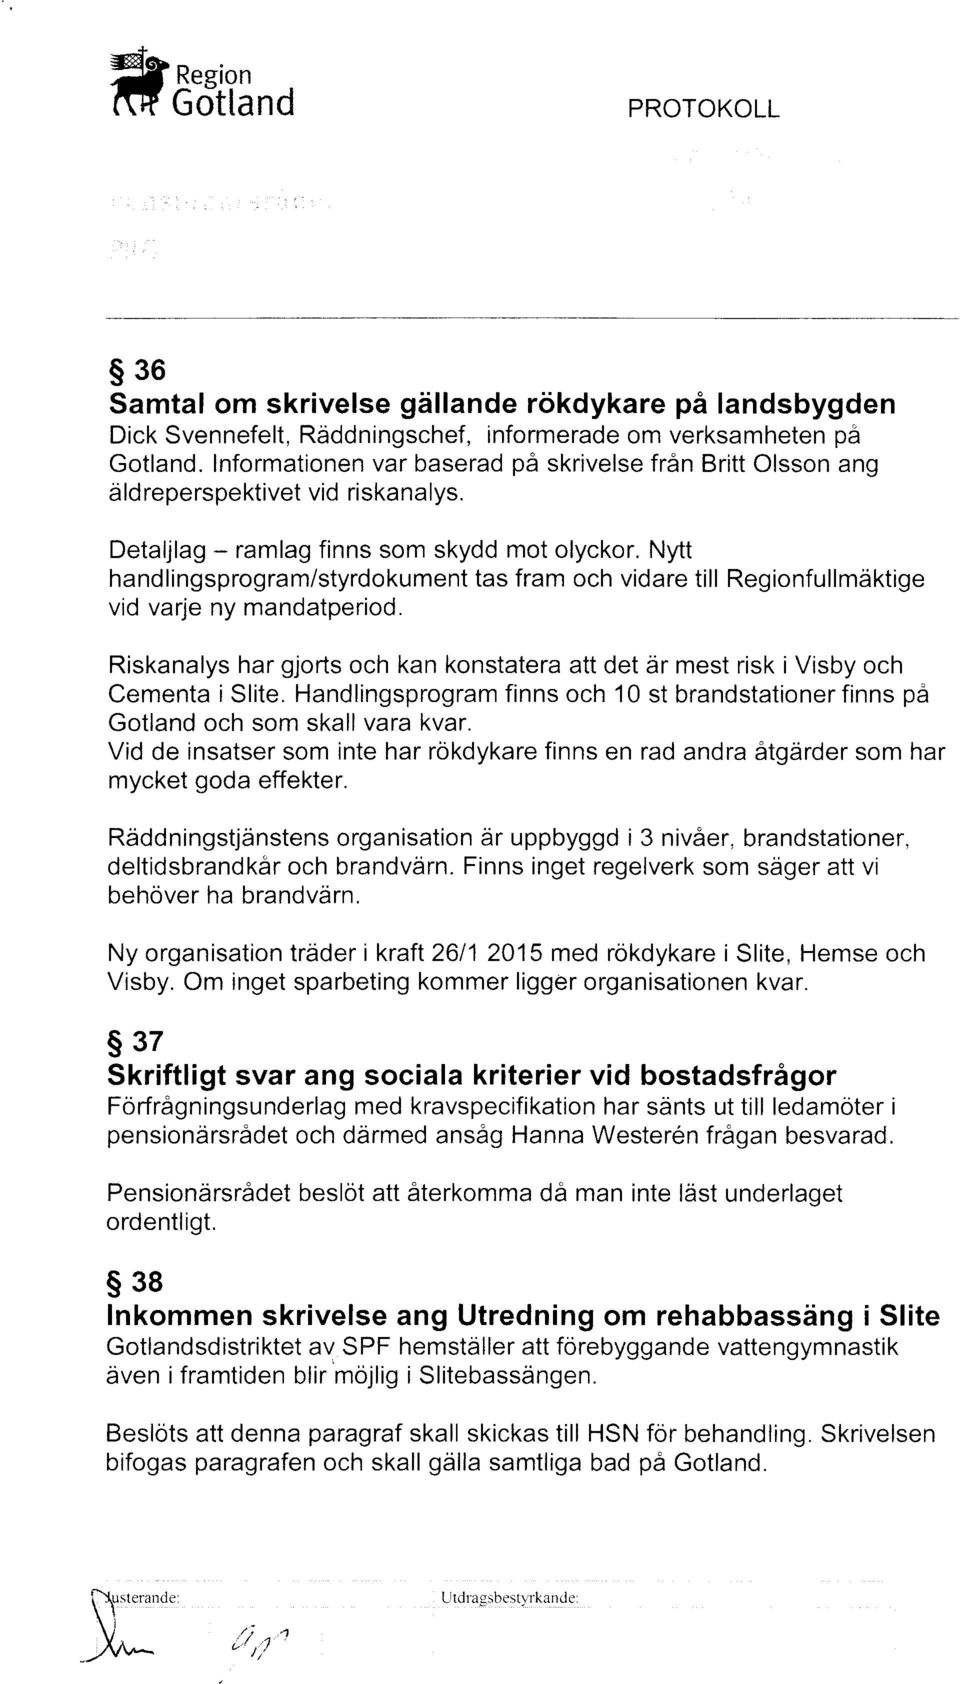 Nytt hand lingsprogram/styrdokument tas fram och vidare till Regionfullmdktige vid varje ny mandatperiod. Riskanalys har gjorts och kan konstater att det dr mest risk i Visby och Cementa i Slite.